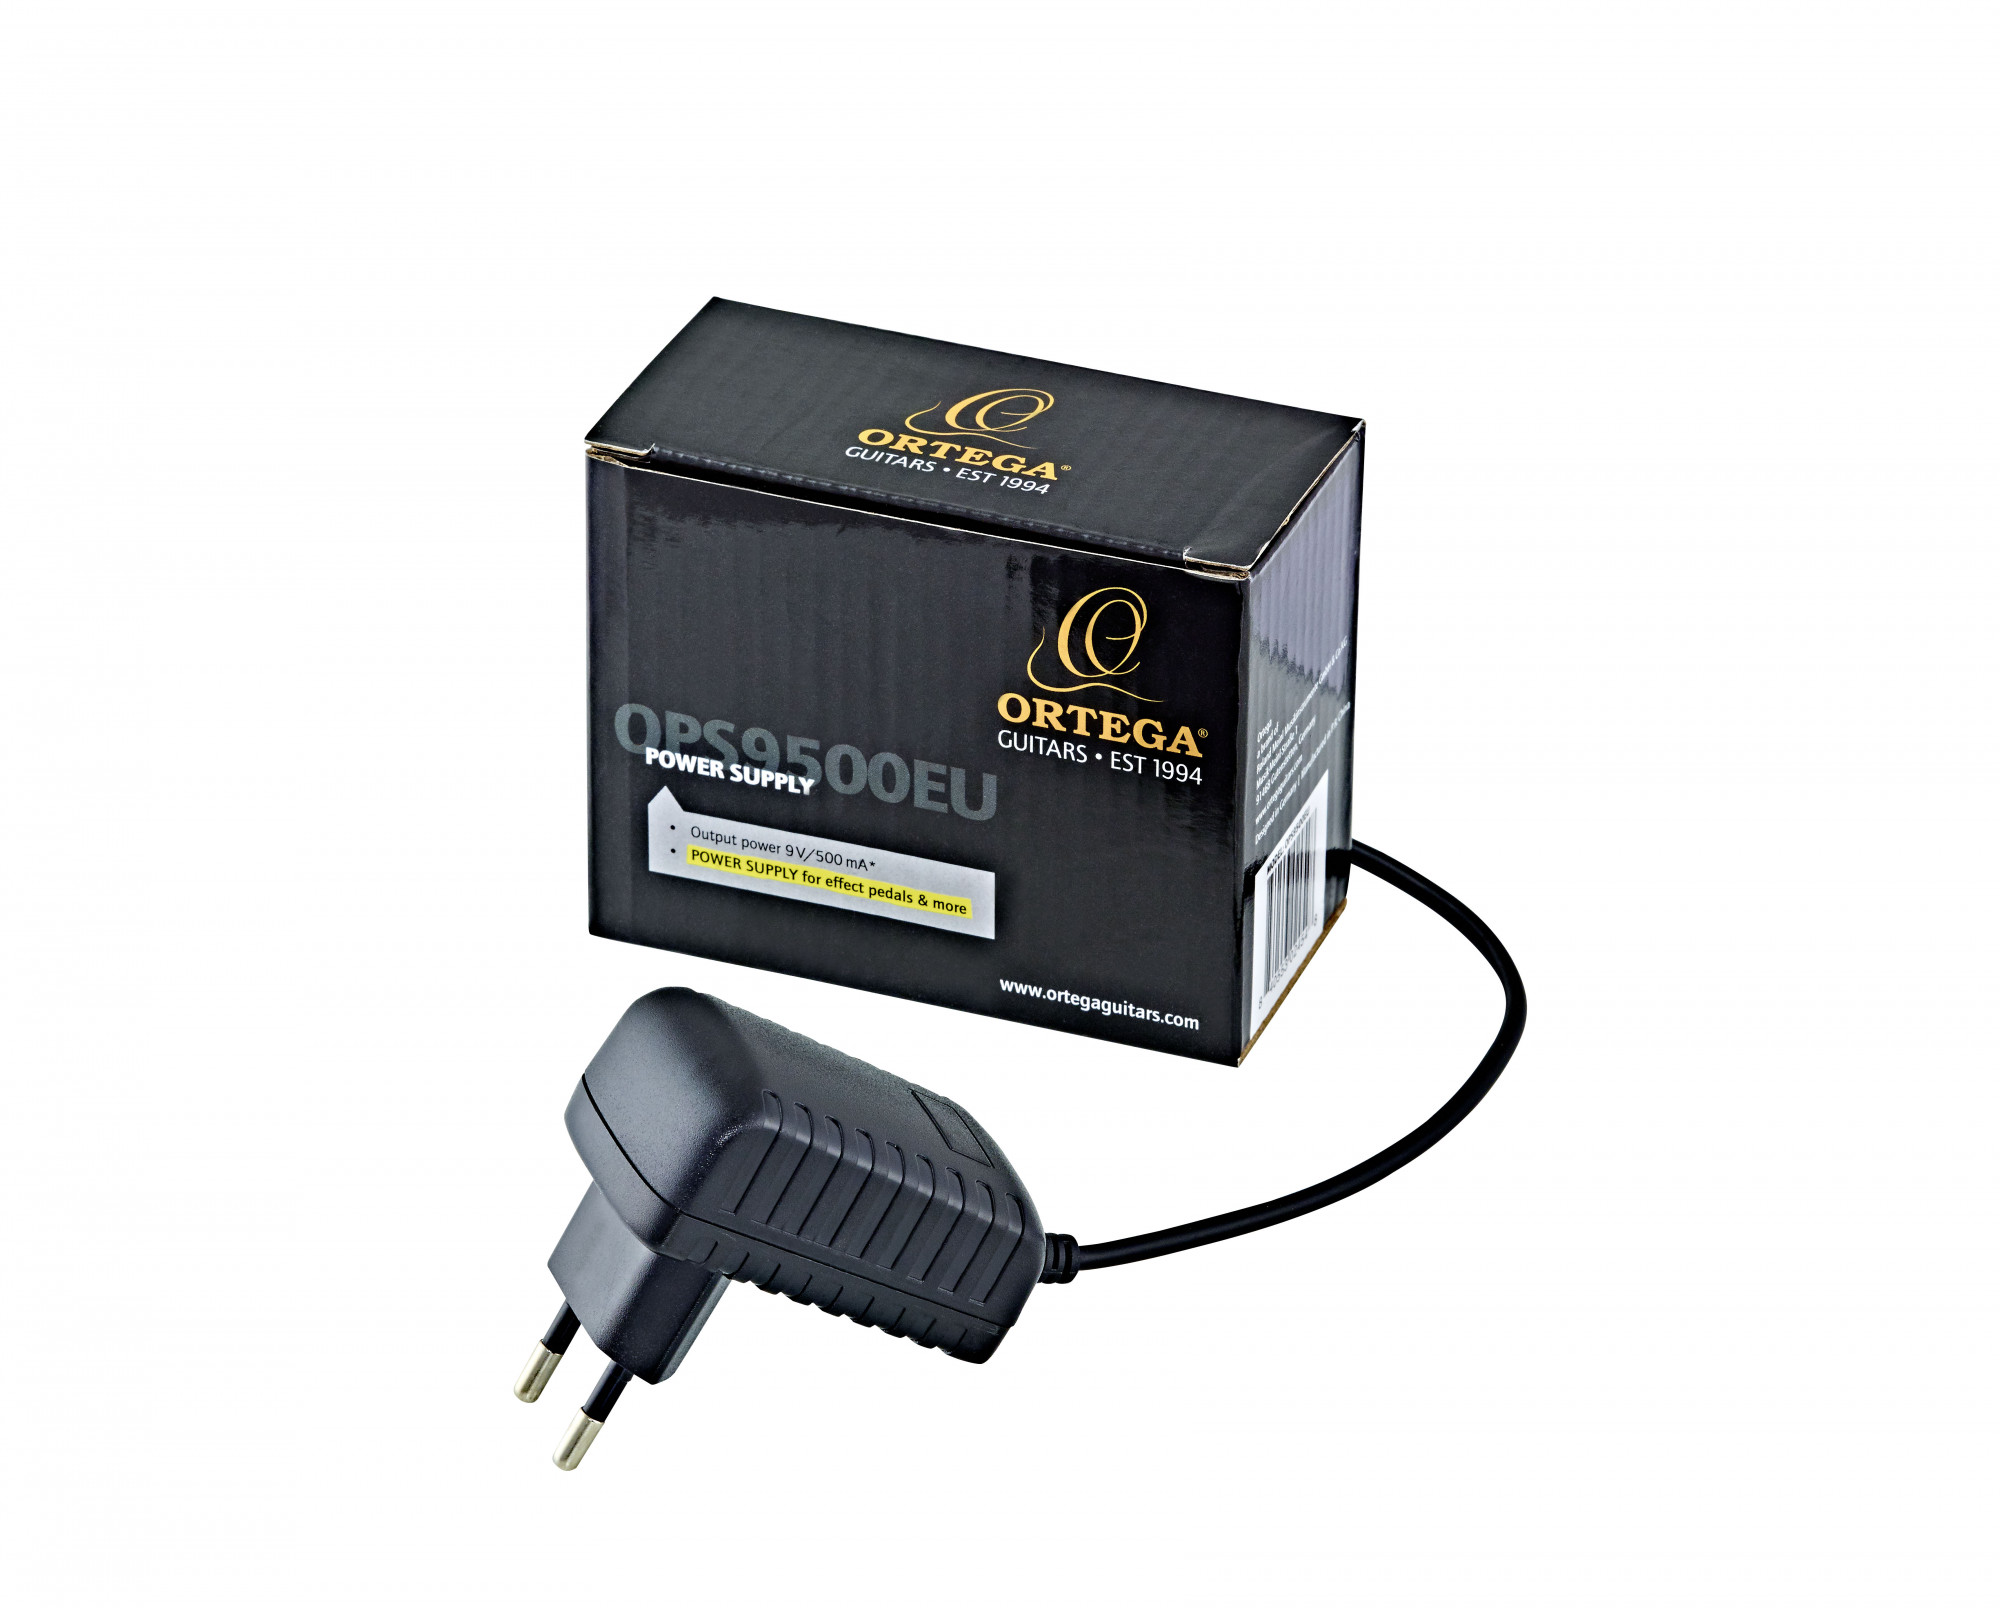 ORTEGA EU Power Adapter - 9V DC/500mA (OPS9500EU), Cables & Power, Accessories, Ortega Guitars